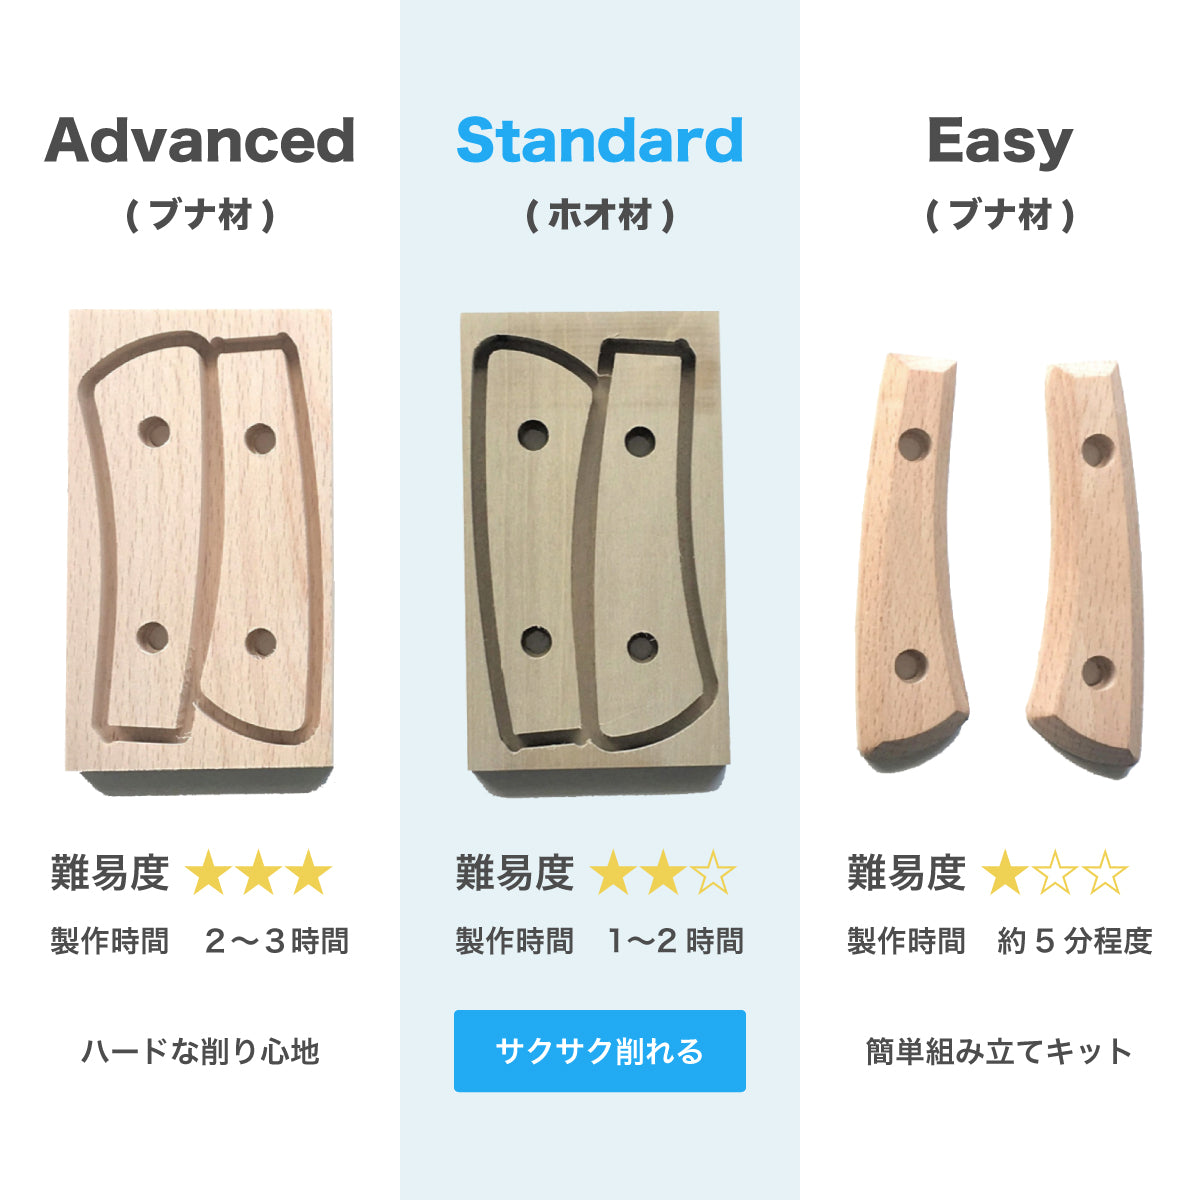 【難易度★★☆】It's my knife Craft Standard (炭素鋼/青紙二号) 4,290円